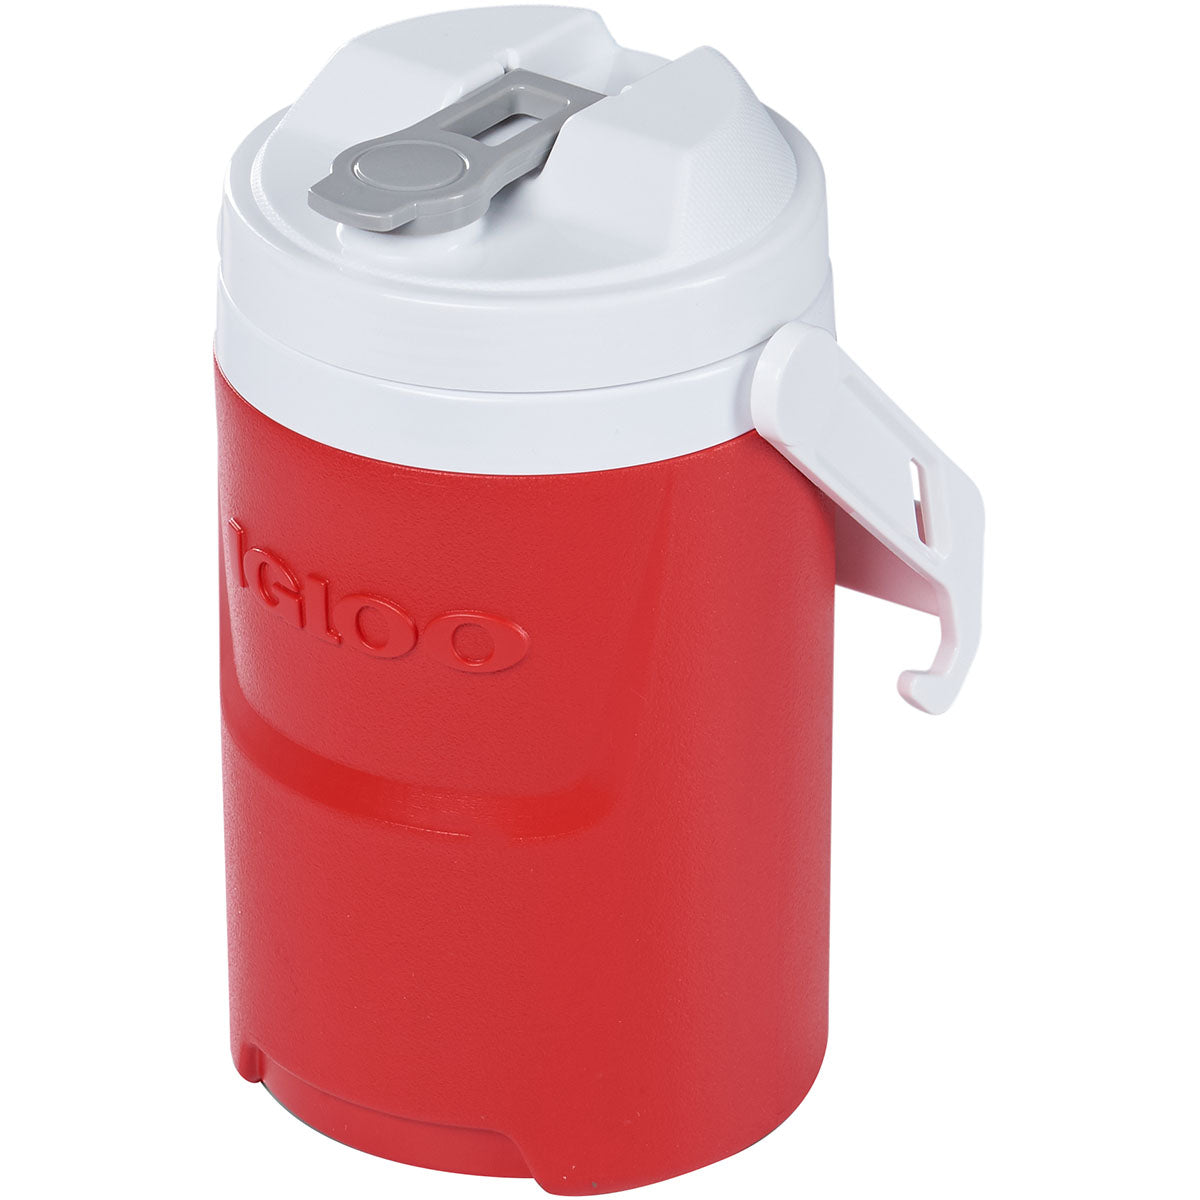 Igloo Latitude Pro Half-Gallon Beverage Jug